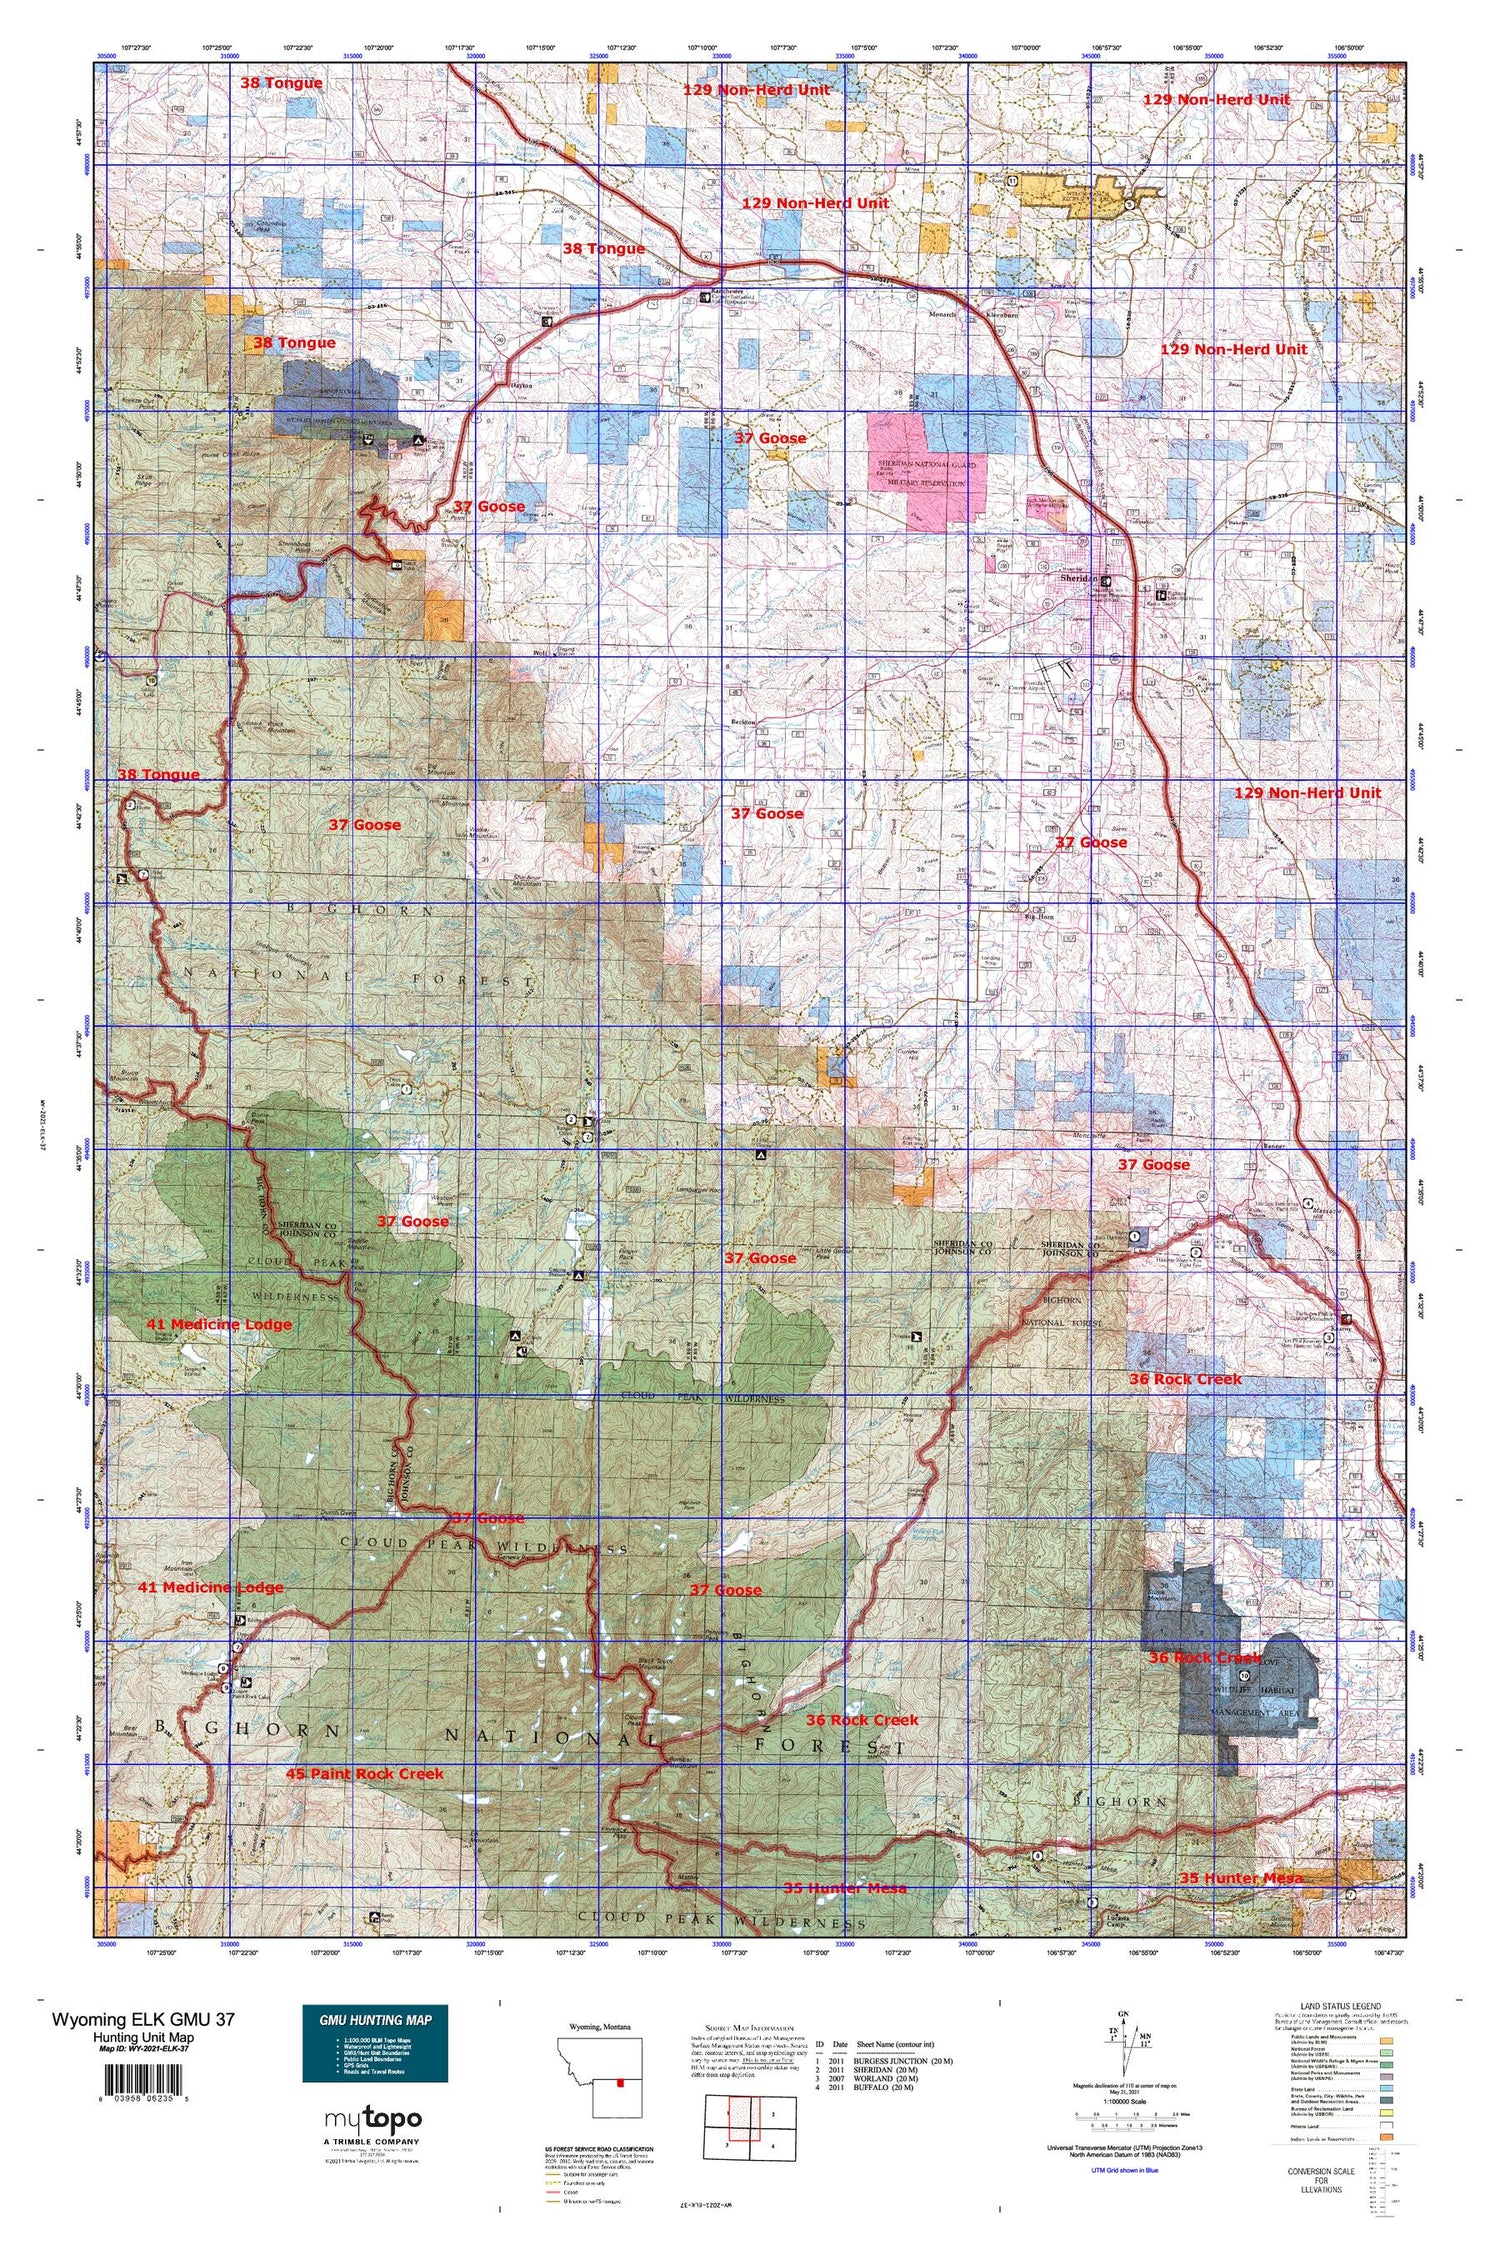 Wyoming Elk GMU 37 Map Image